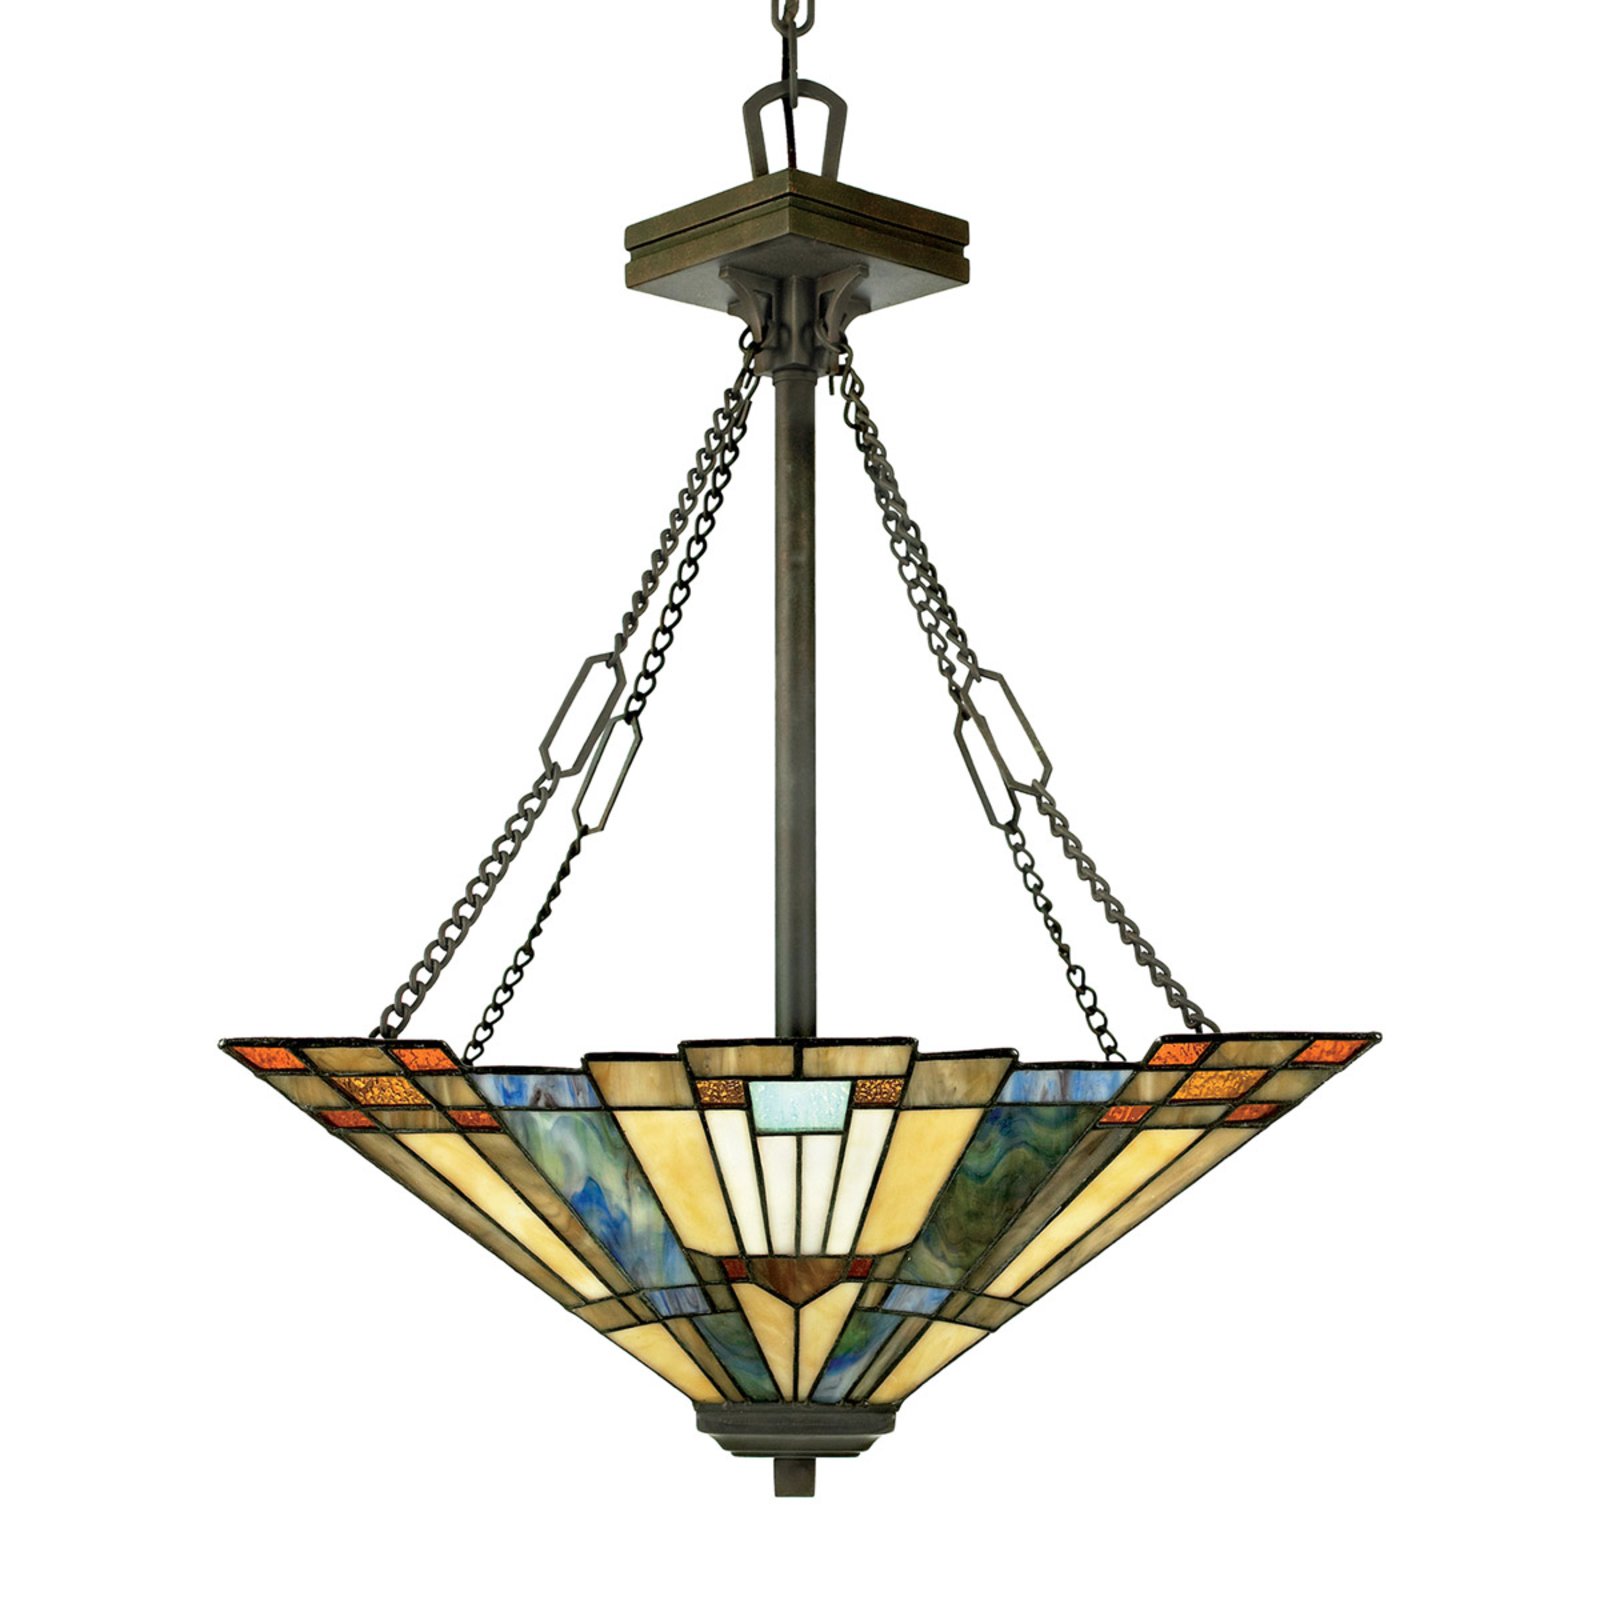 Závěsné světlo Inglenook s barevným sklem L 45 cm